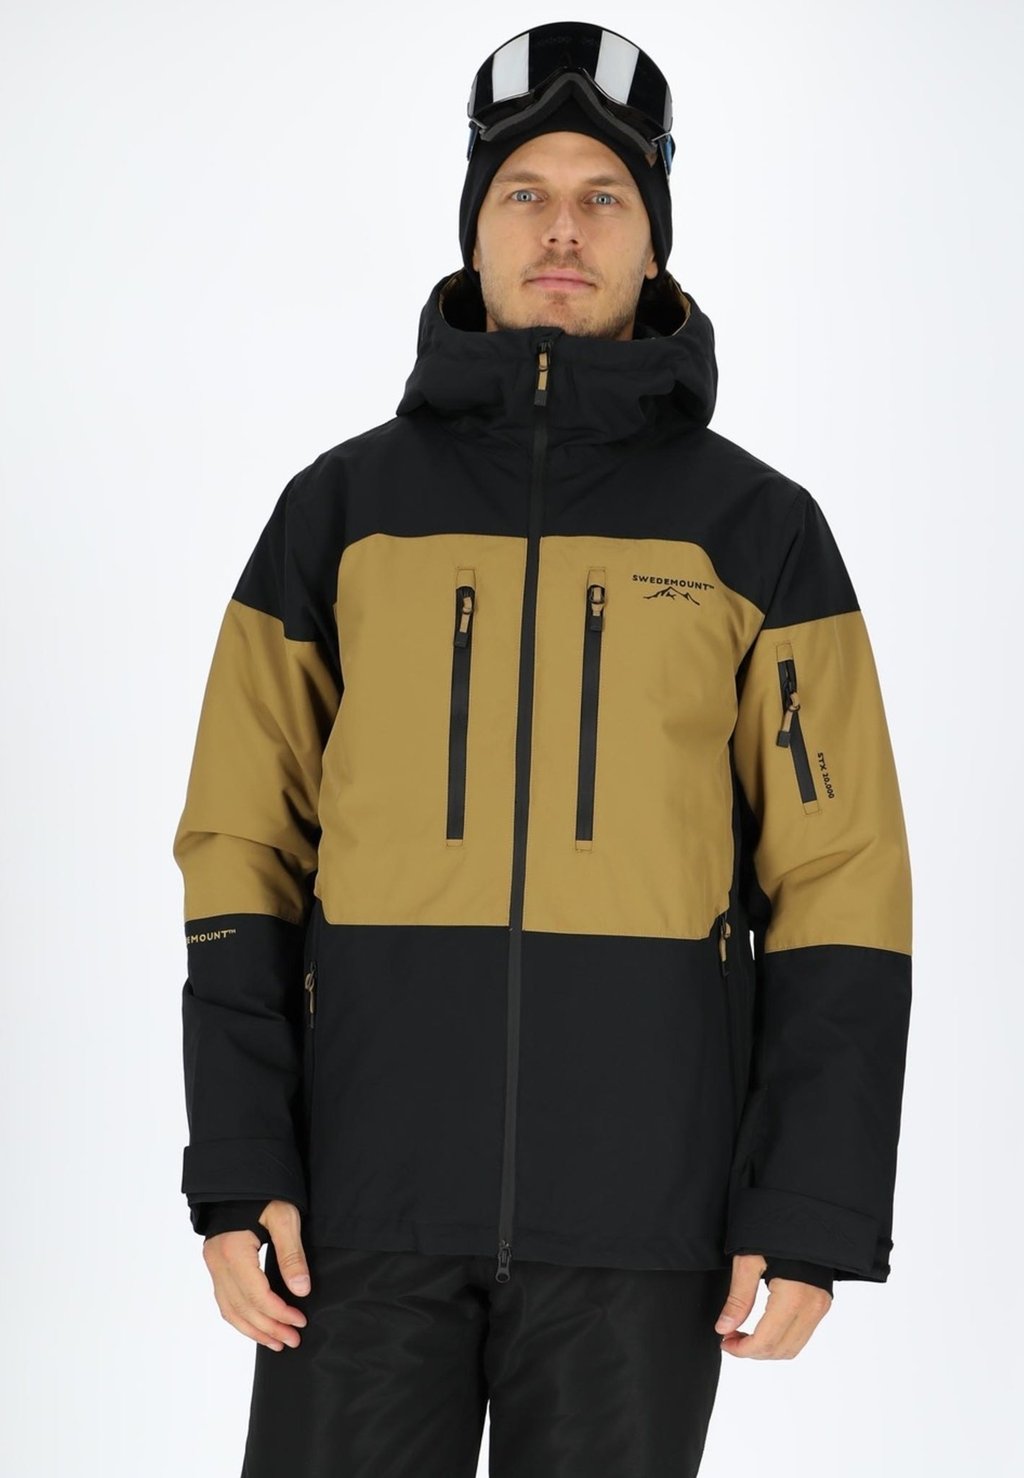 Лыжная куртка FREERIDE SHELL JACKET Swedemount, цвет sand black куртка swedemount